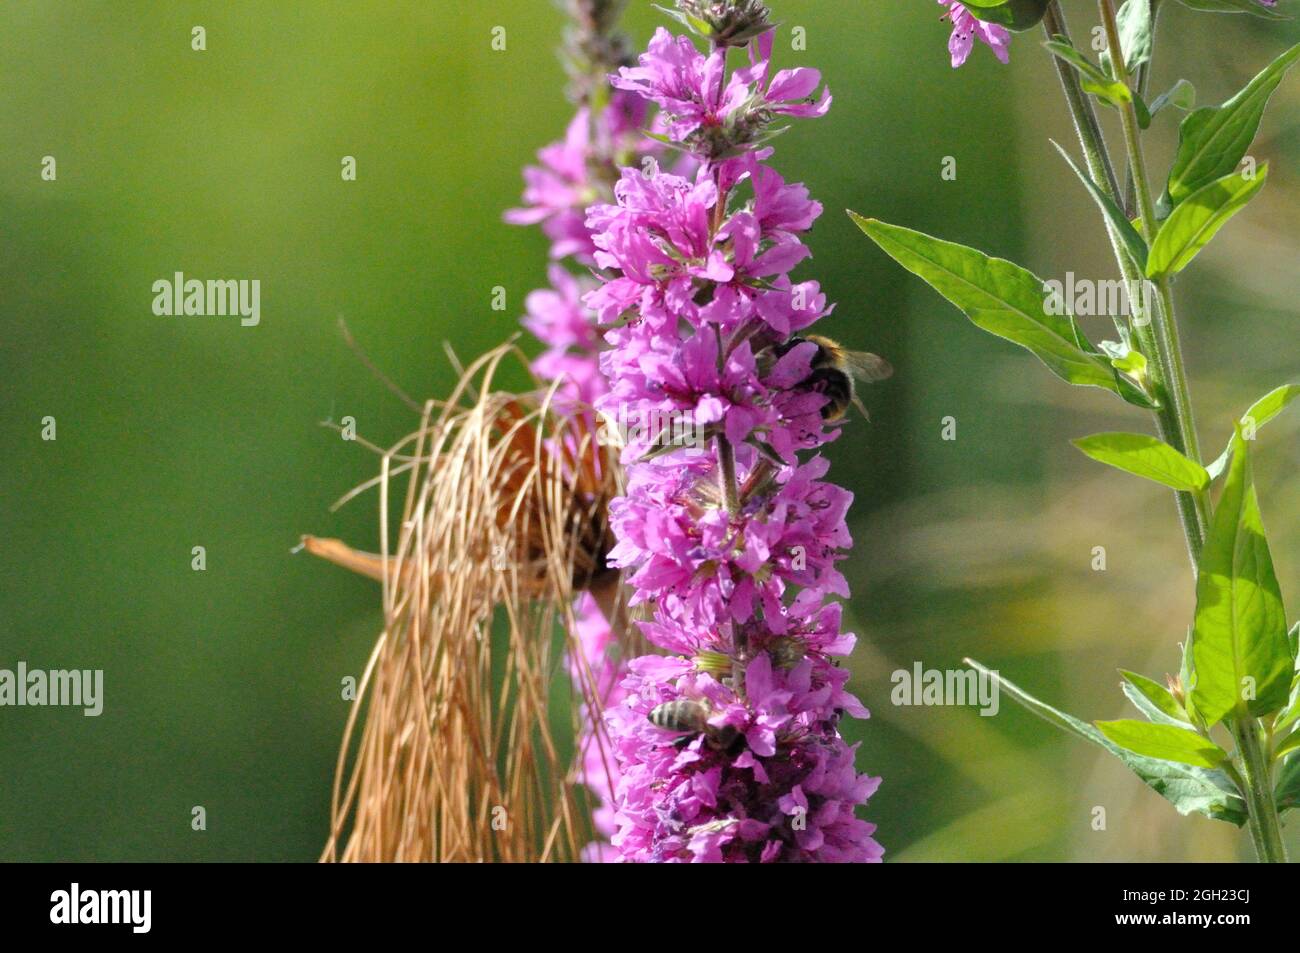 Gewöhnlicher Blutweiderich (Lythrum salicaria) im Garten an einem künstlichen Gartenteich lädt Insekten (hier Bienen) zum Naschen ein. - le violet se desserre Banque D'Images